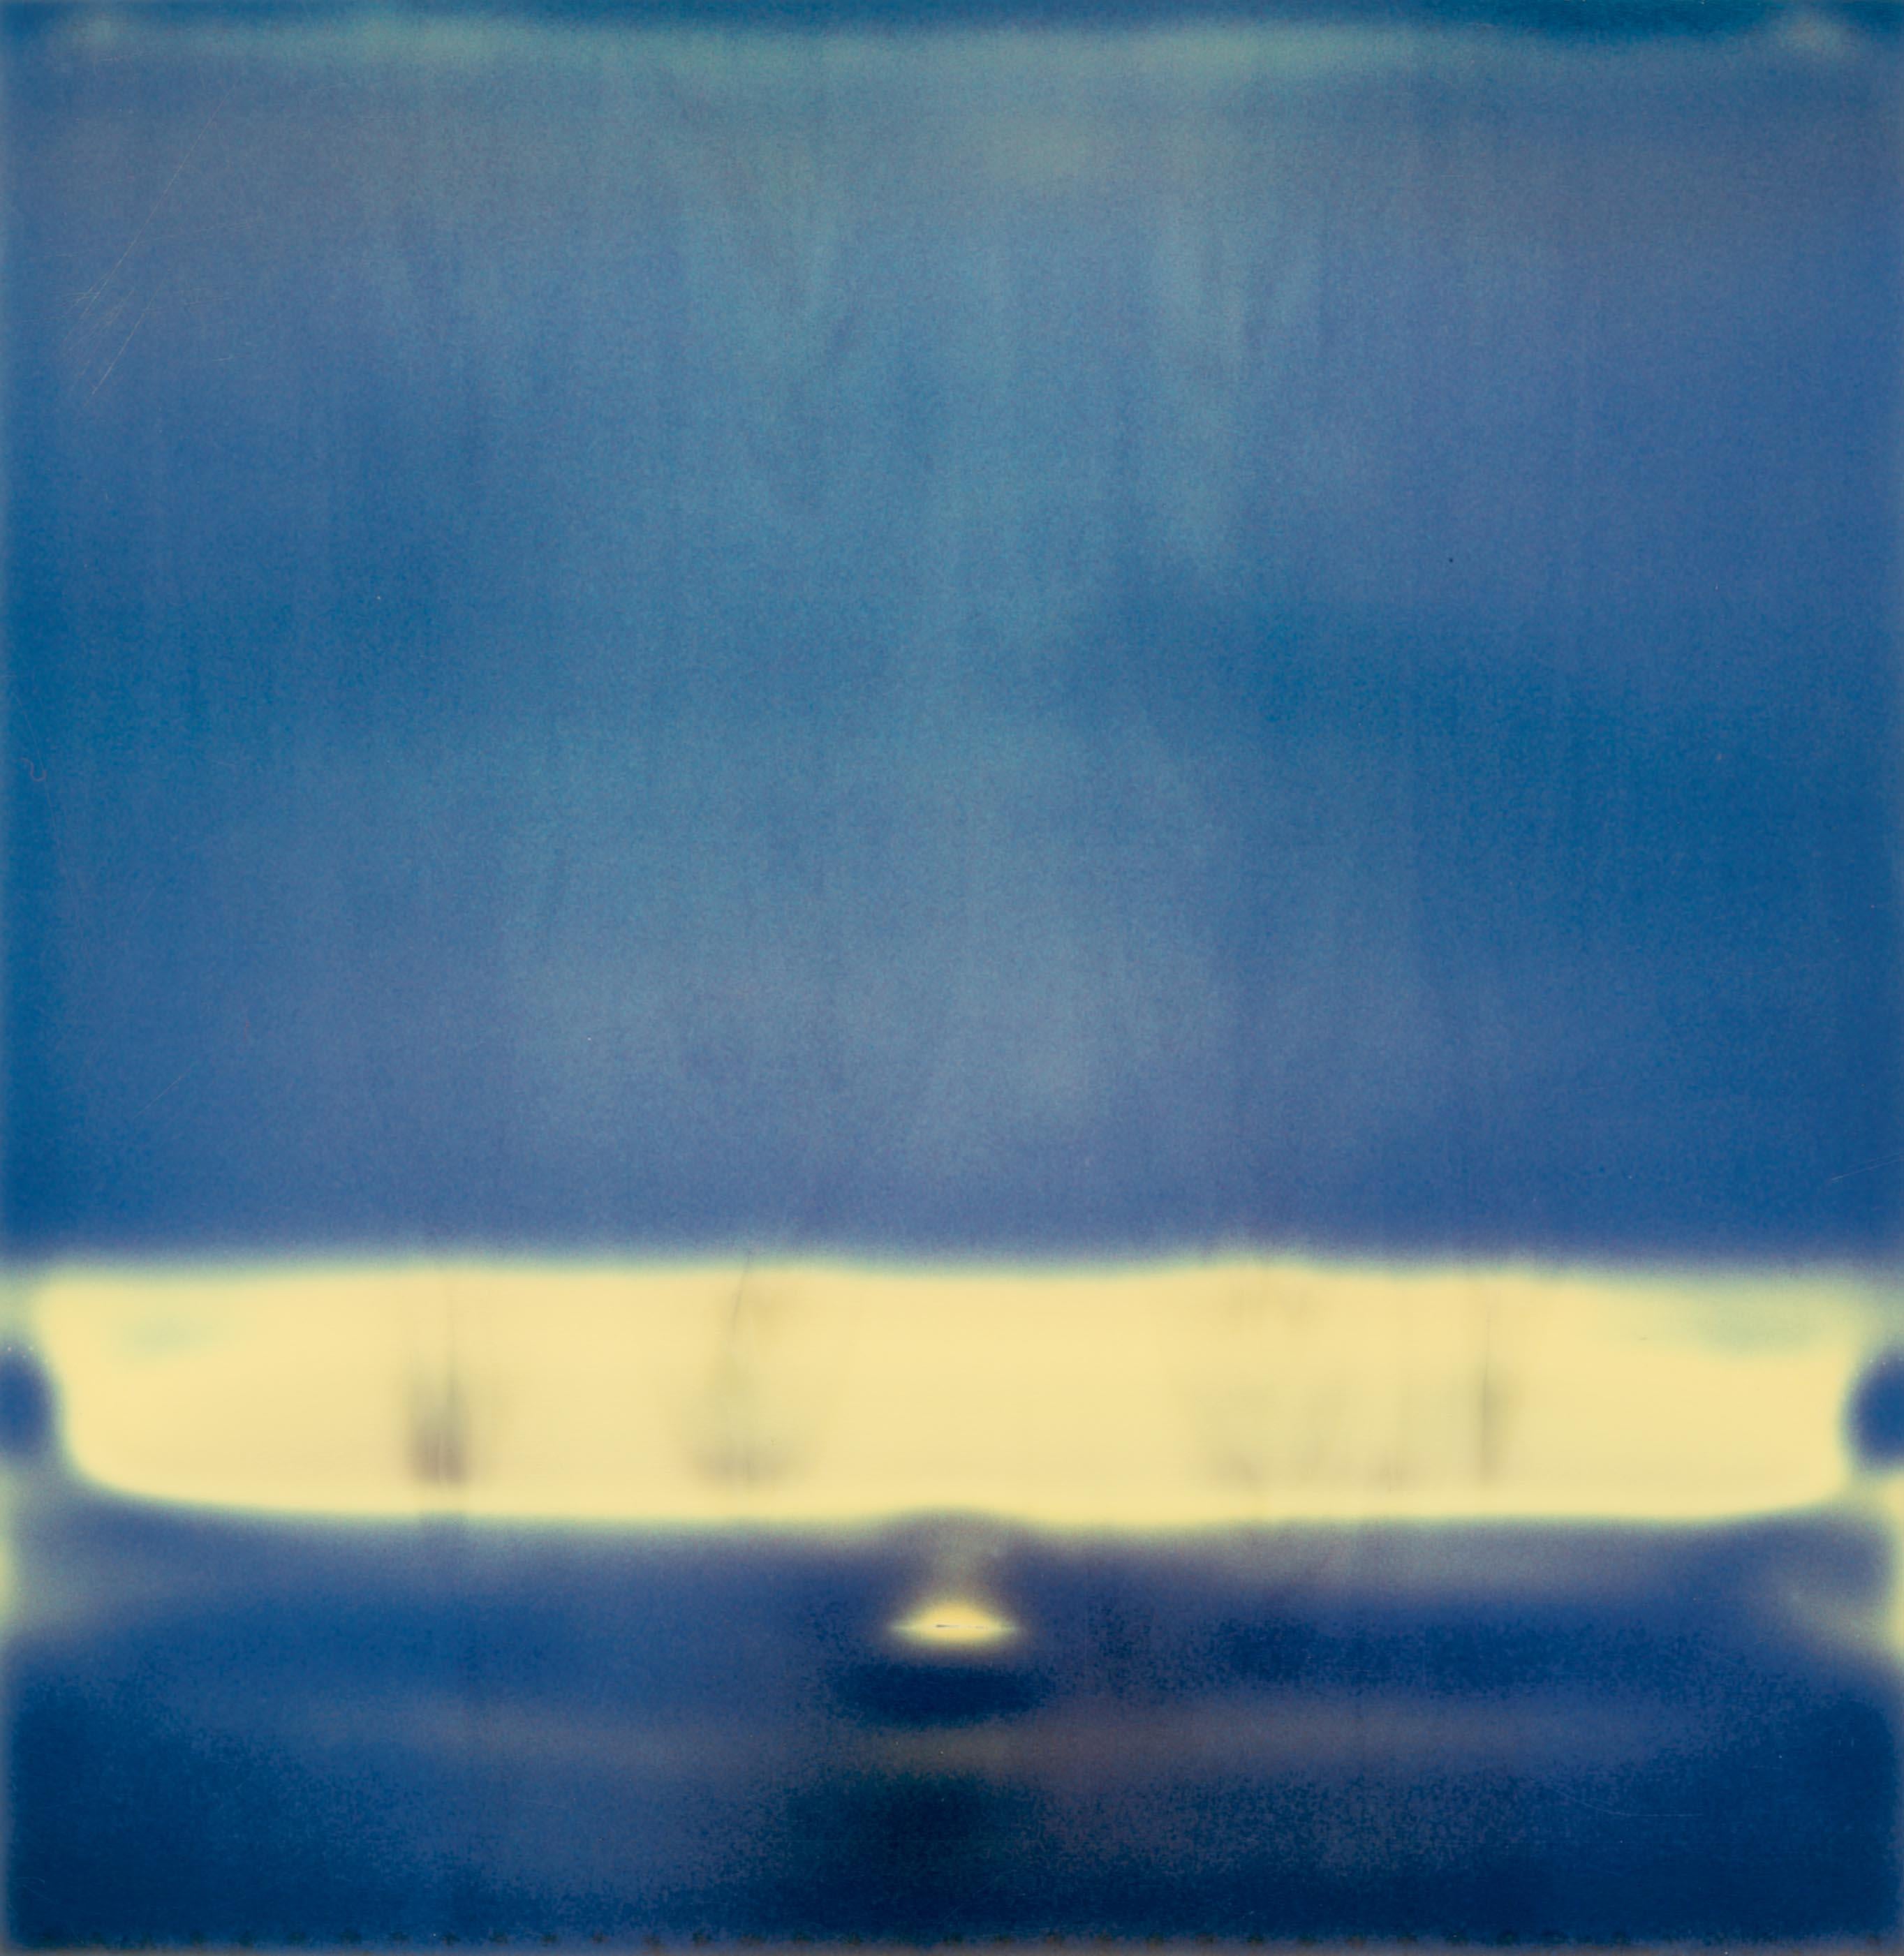 Stefanie Schneider Abstract Photograph – D- Zeitgenössisch, Abstrakt, Polaroid, ausgestellt, Fotografie, Schneider, Traum